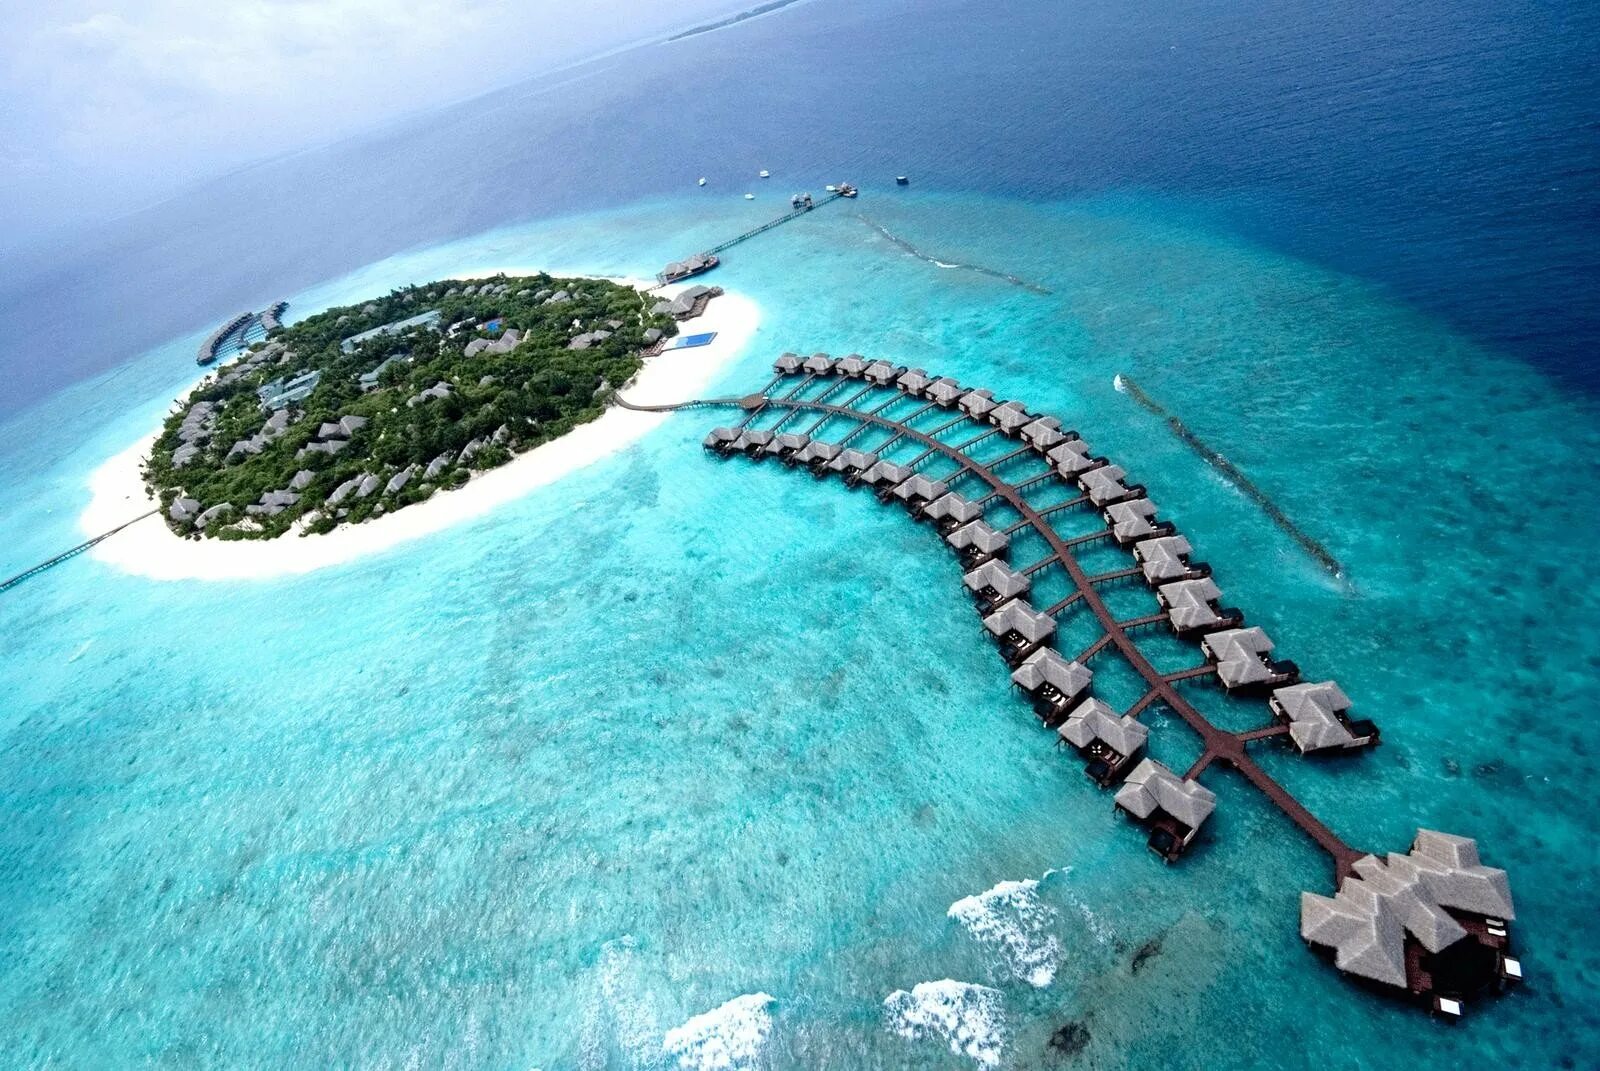 Хаа Алифу Атолл Мальдивы. Мальдивы Гаафу-Дхаалу. Остров Ган Мальдивы. Аэропорт gan Мальдивы. Island место